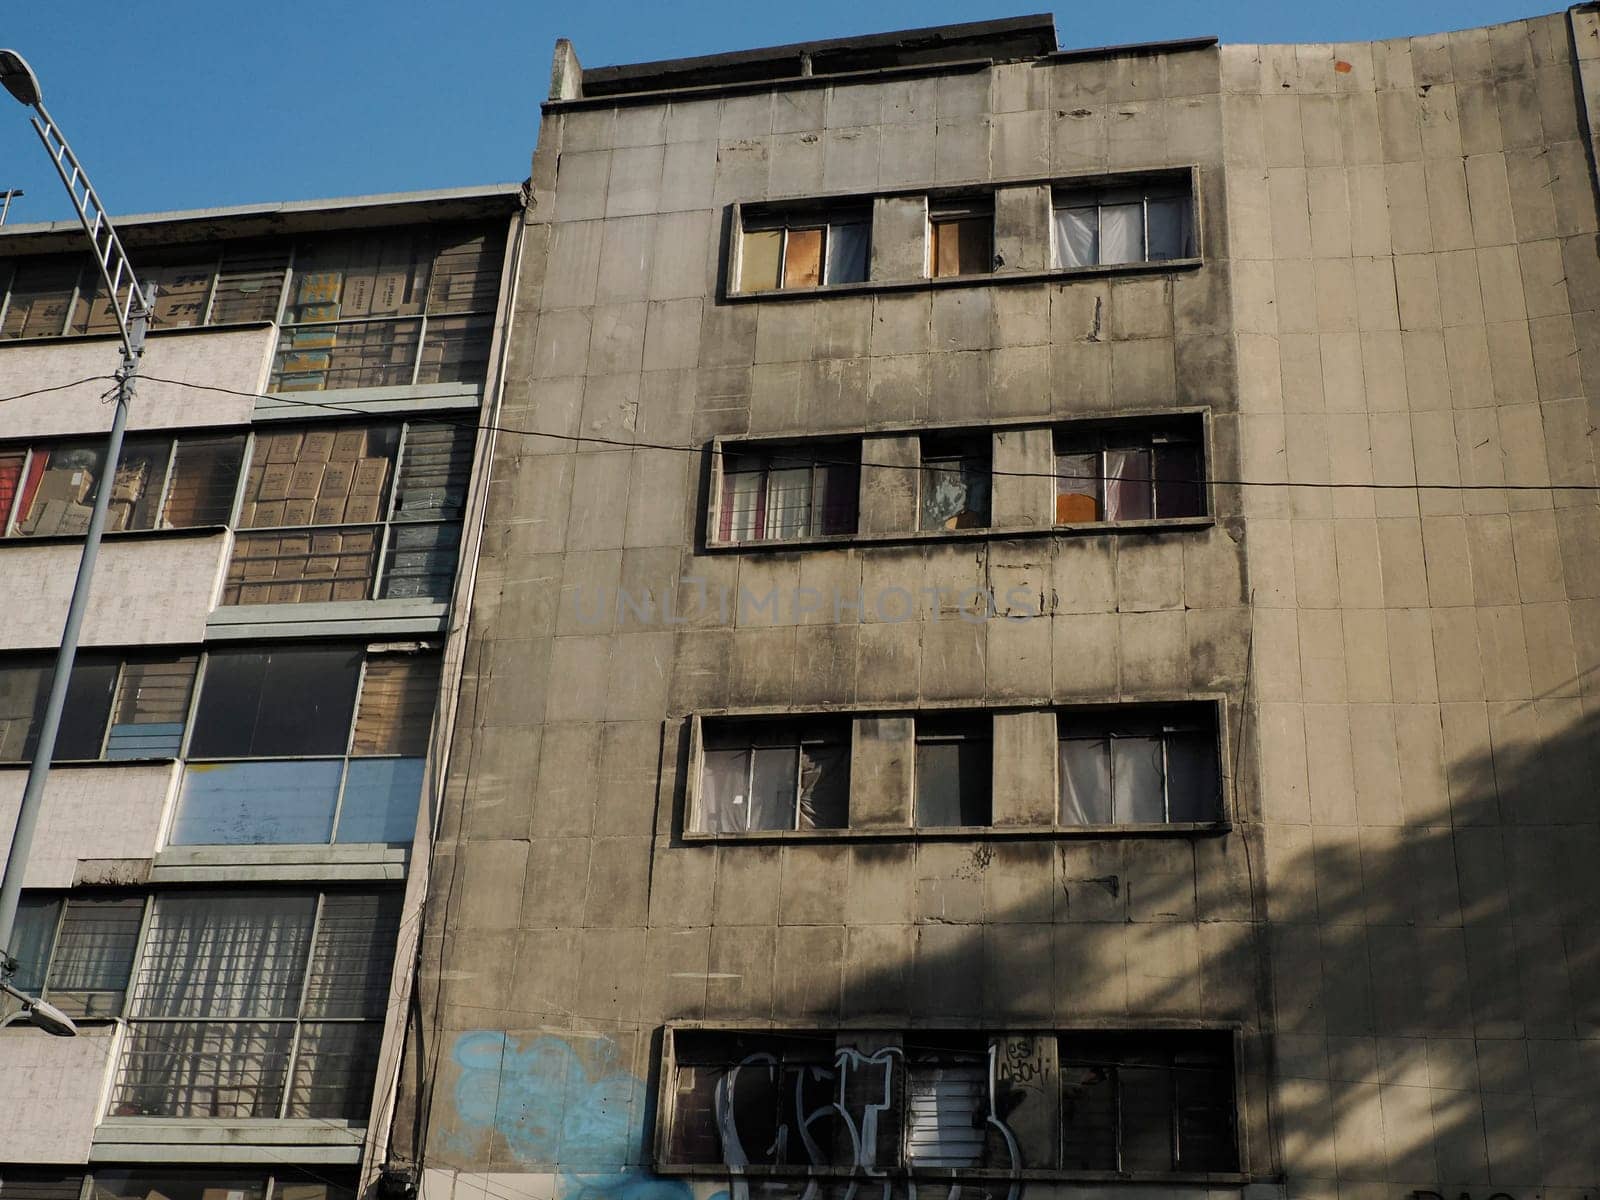 Abandoned modern building in ciudad de mexico, mexico city by AndreaIzzotti